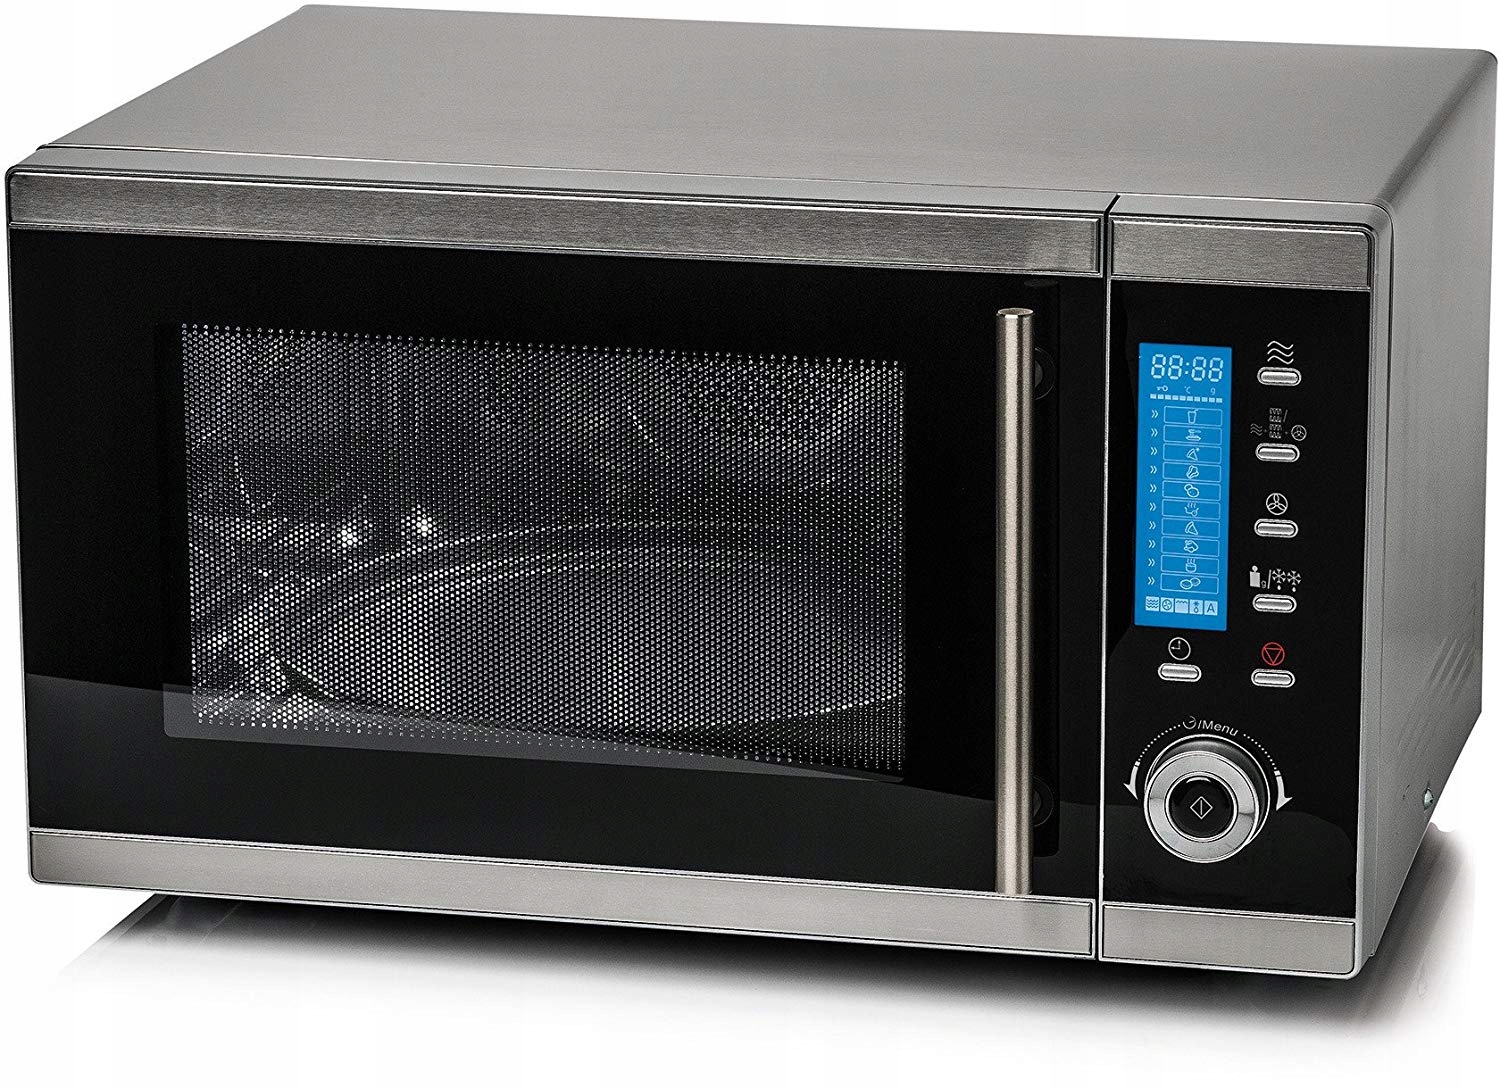 Включи свч. Микроволновая печь Microwave Oven. Saro 900вт СВЧ микроволновка. Микроволновая печь Медион с грилем. Simfer микроволновая печь.